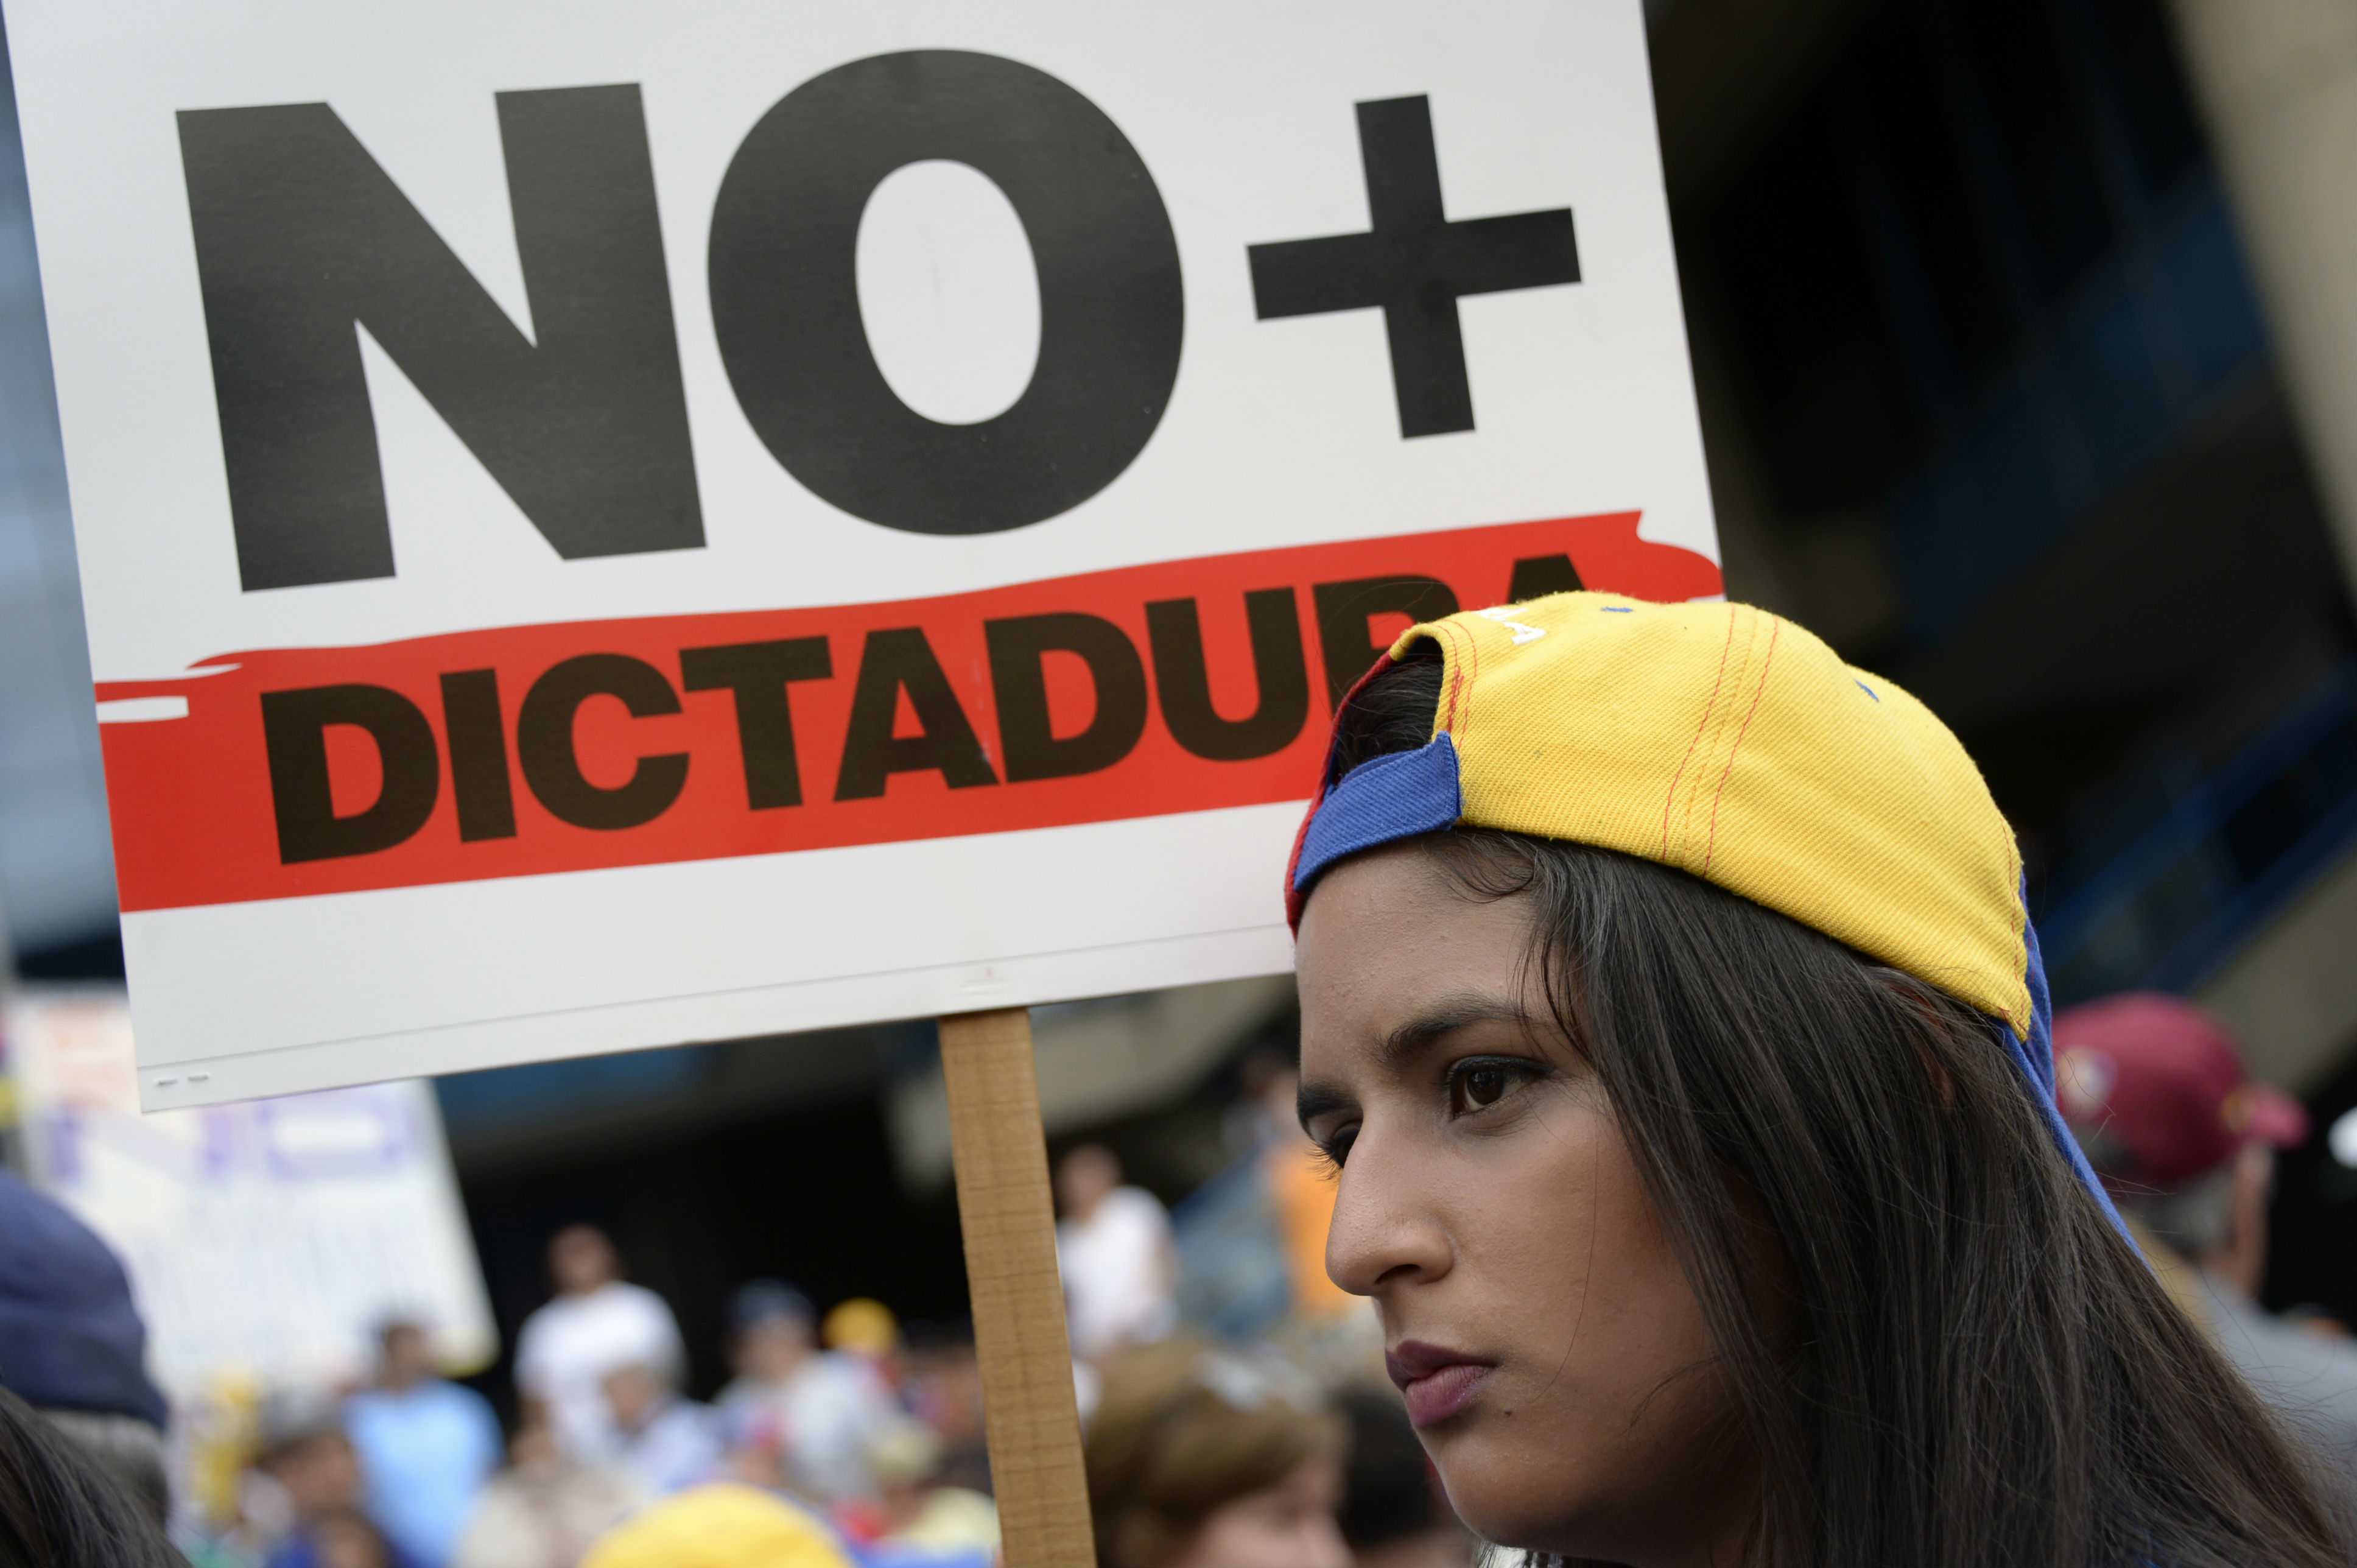 La OEA instó a Venezuela a postergar elecciones presidenciales de abril